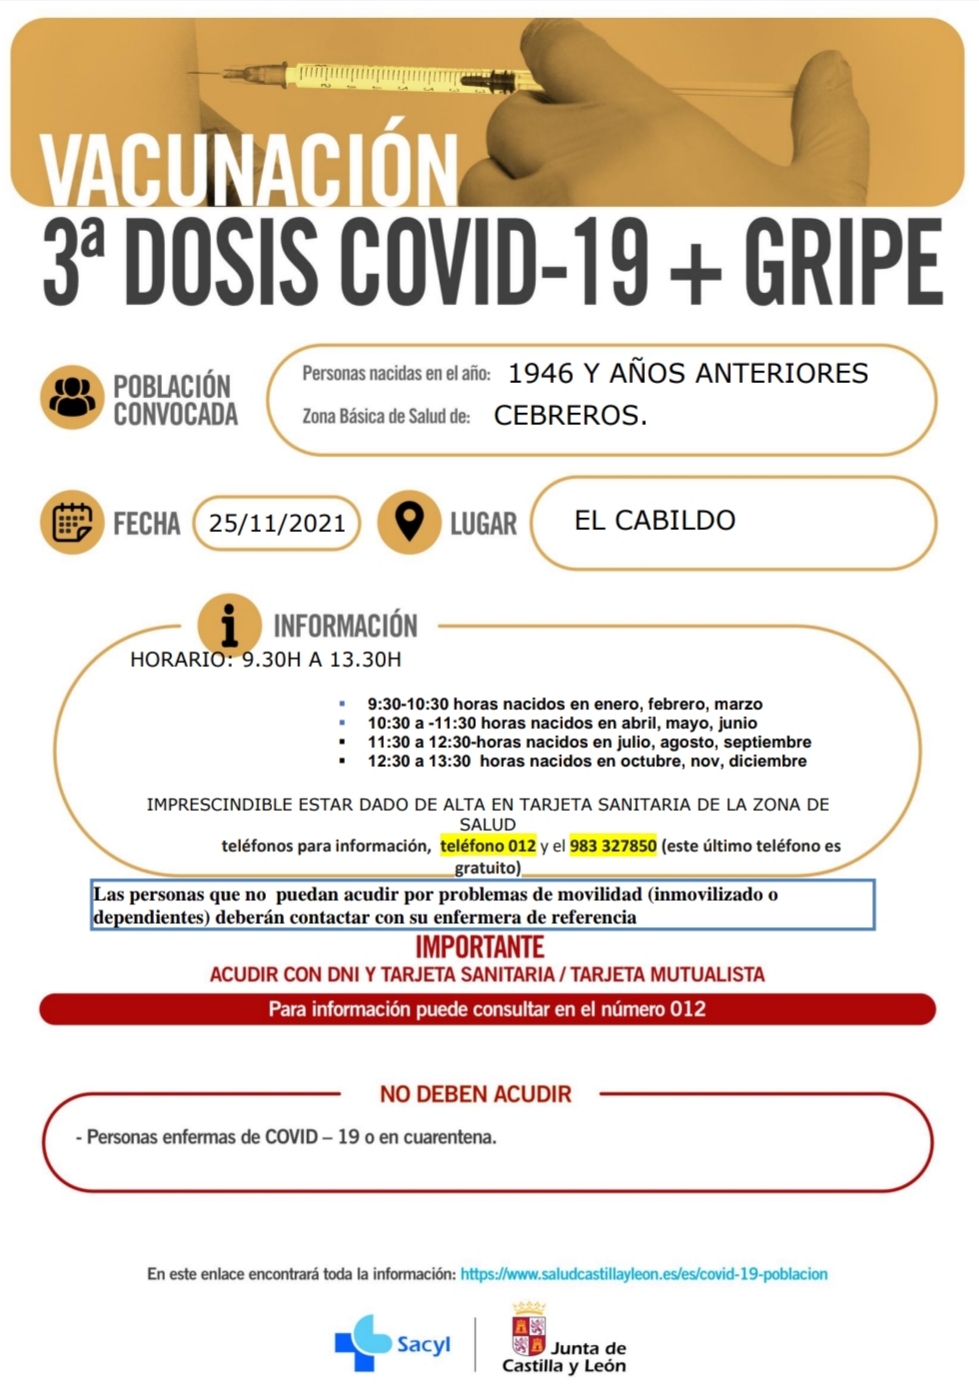 VACUNACIÓN 3ª DOSIS COVID-19 + GRIPE: NACIDOS EN 1946 Y AÑOS ANTERIORES